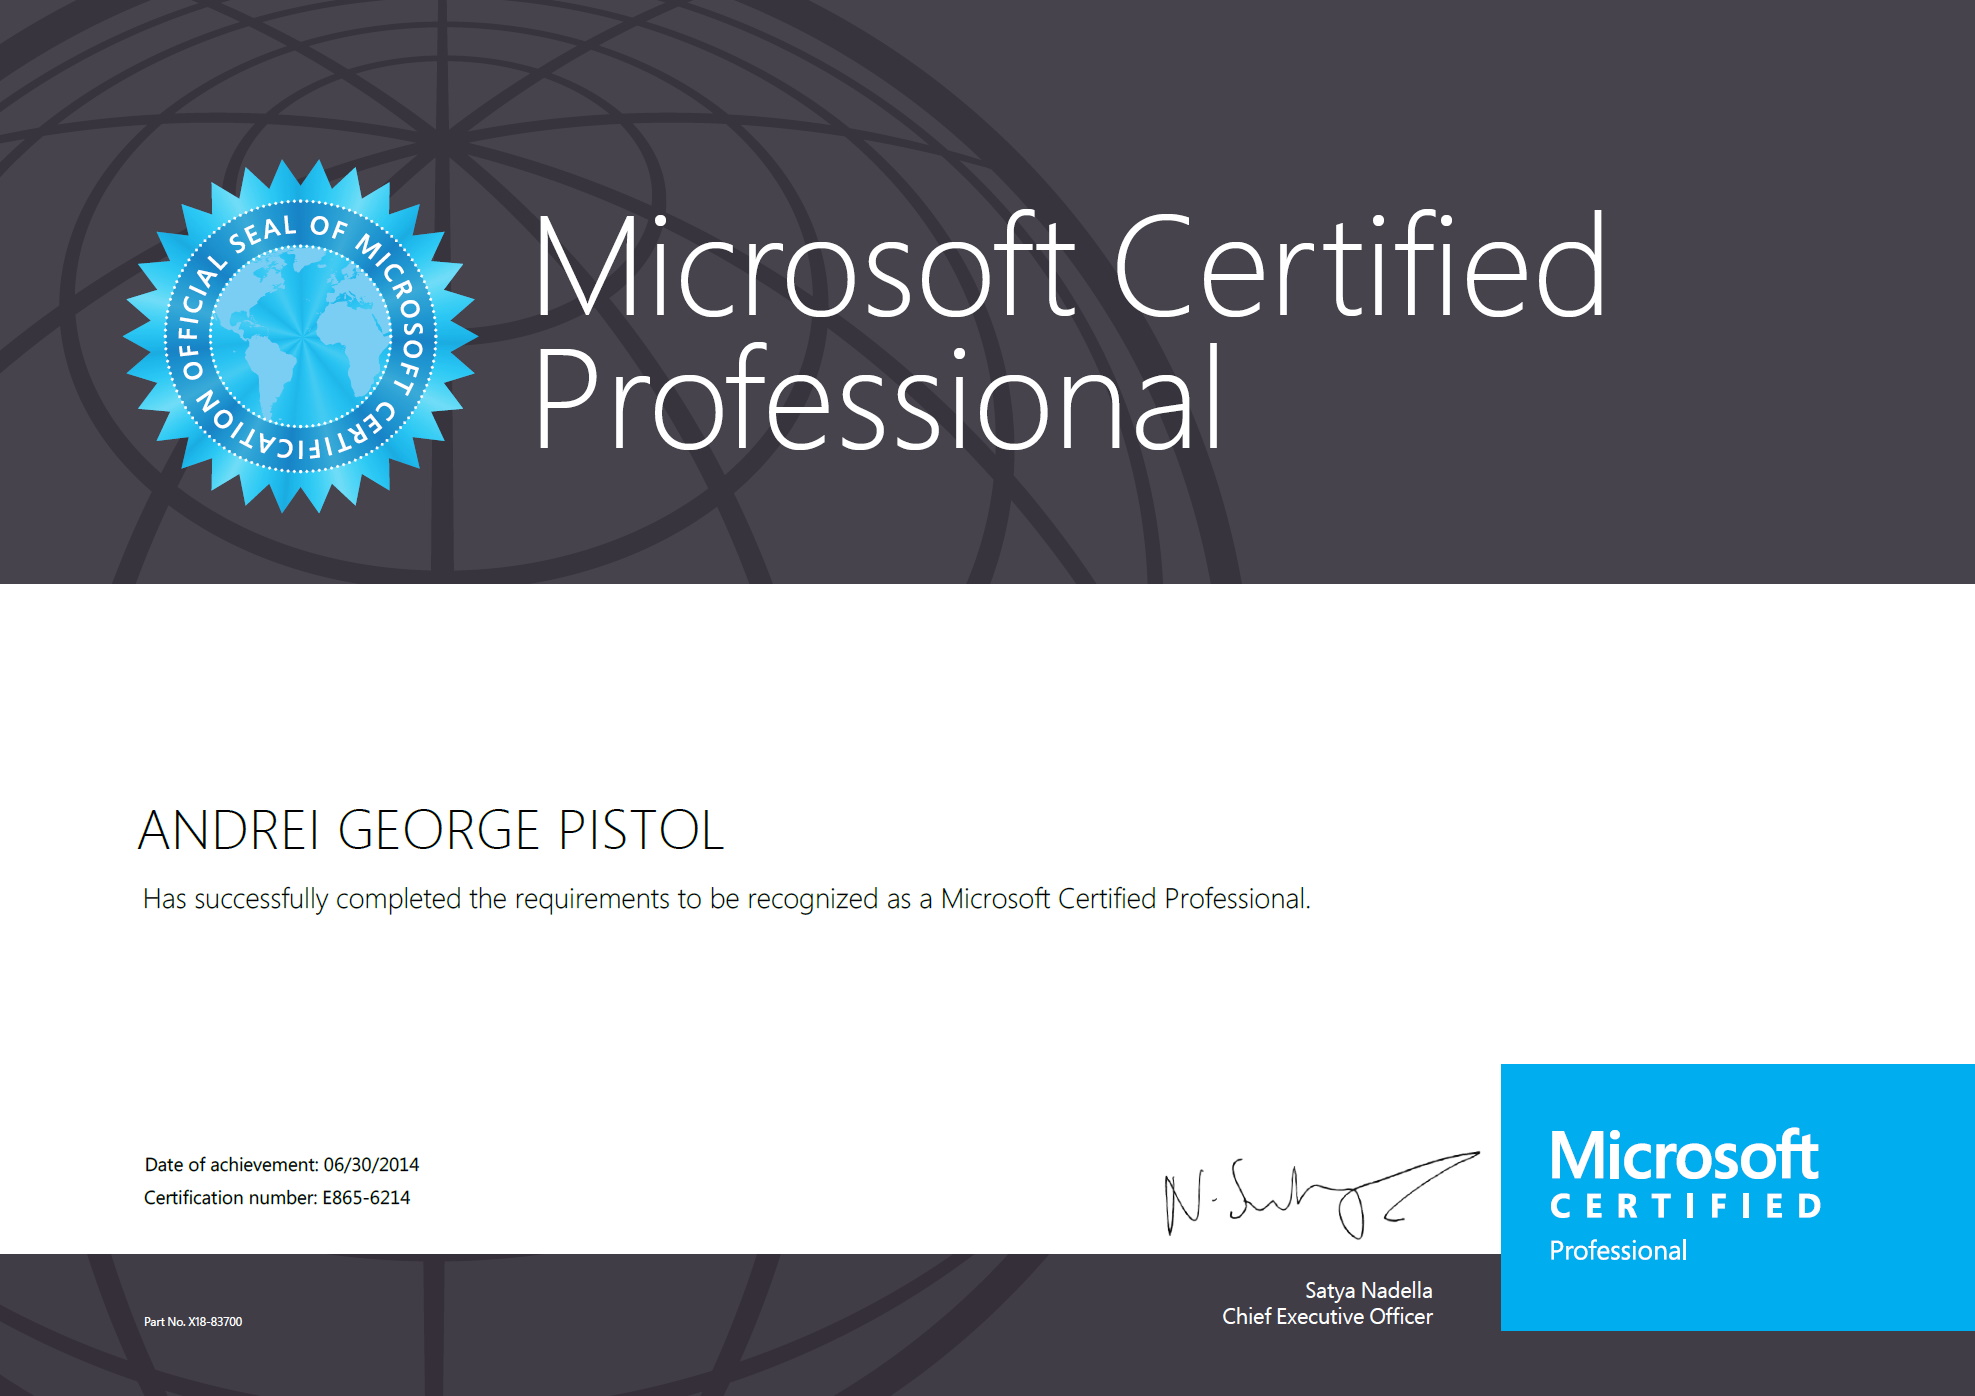 Andrei Pistol "JeFawk" is a certified Microsoft Professional